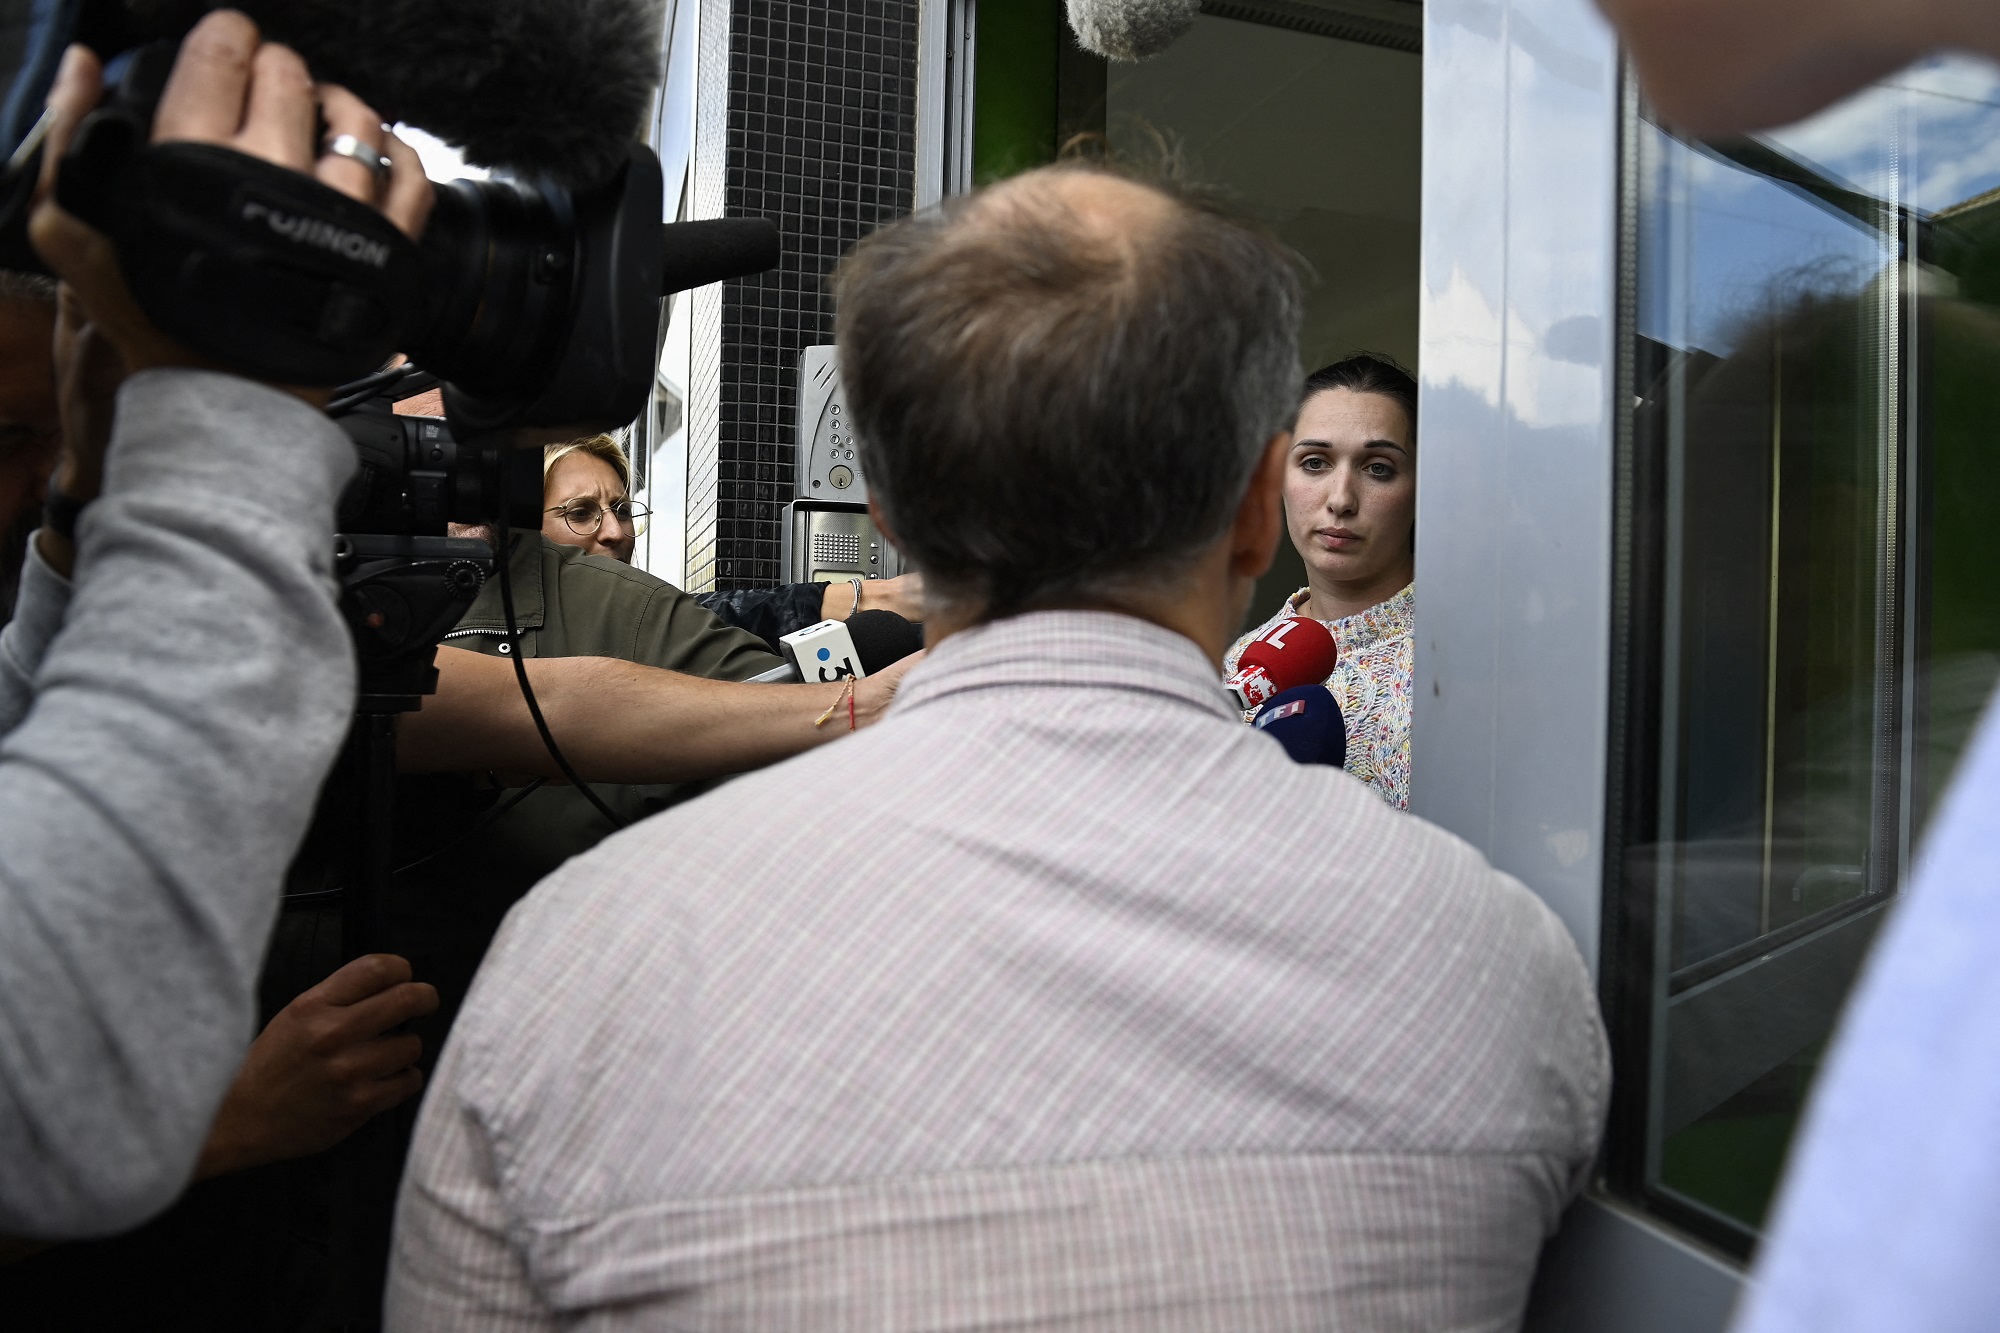 Γαλλία: Αμφιβολίες του εισαγγελέα για την εκδοχή της γυναίκας που λέει ότι ο σύζυγός της την κρατούσε φυλακισμένη επί 12 χρόνια